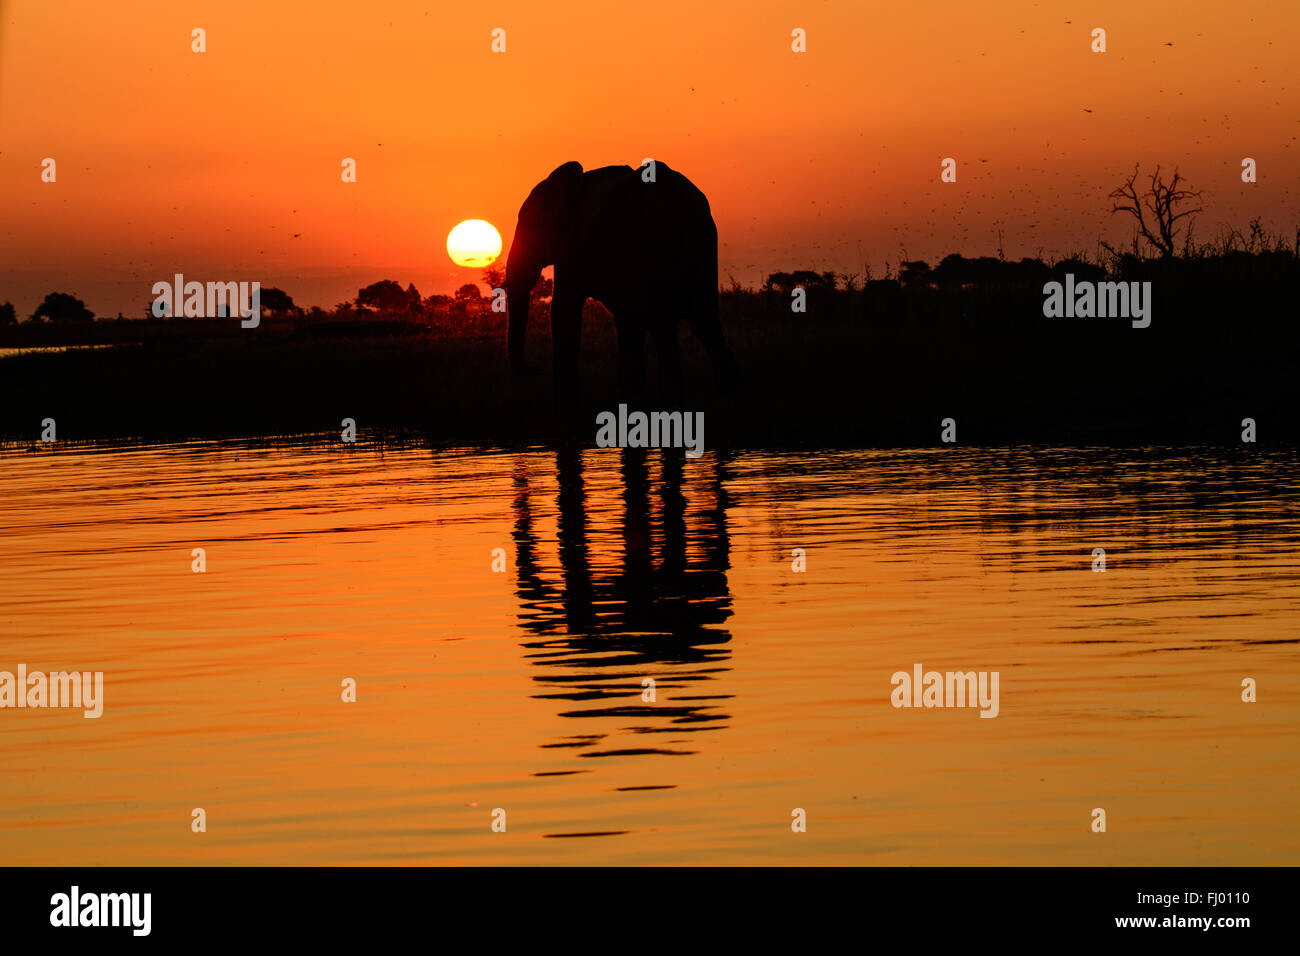 Afrikanischer Elefant Silhouette und seinem Schatten in einem afrikanischen Sonnenuntergang Stockfoto